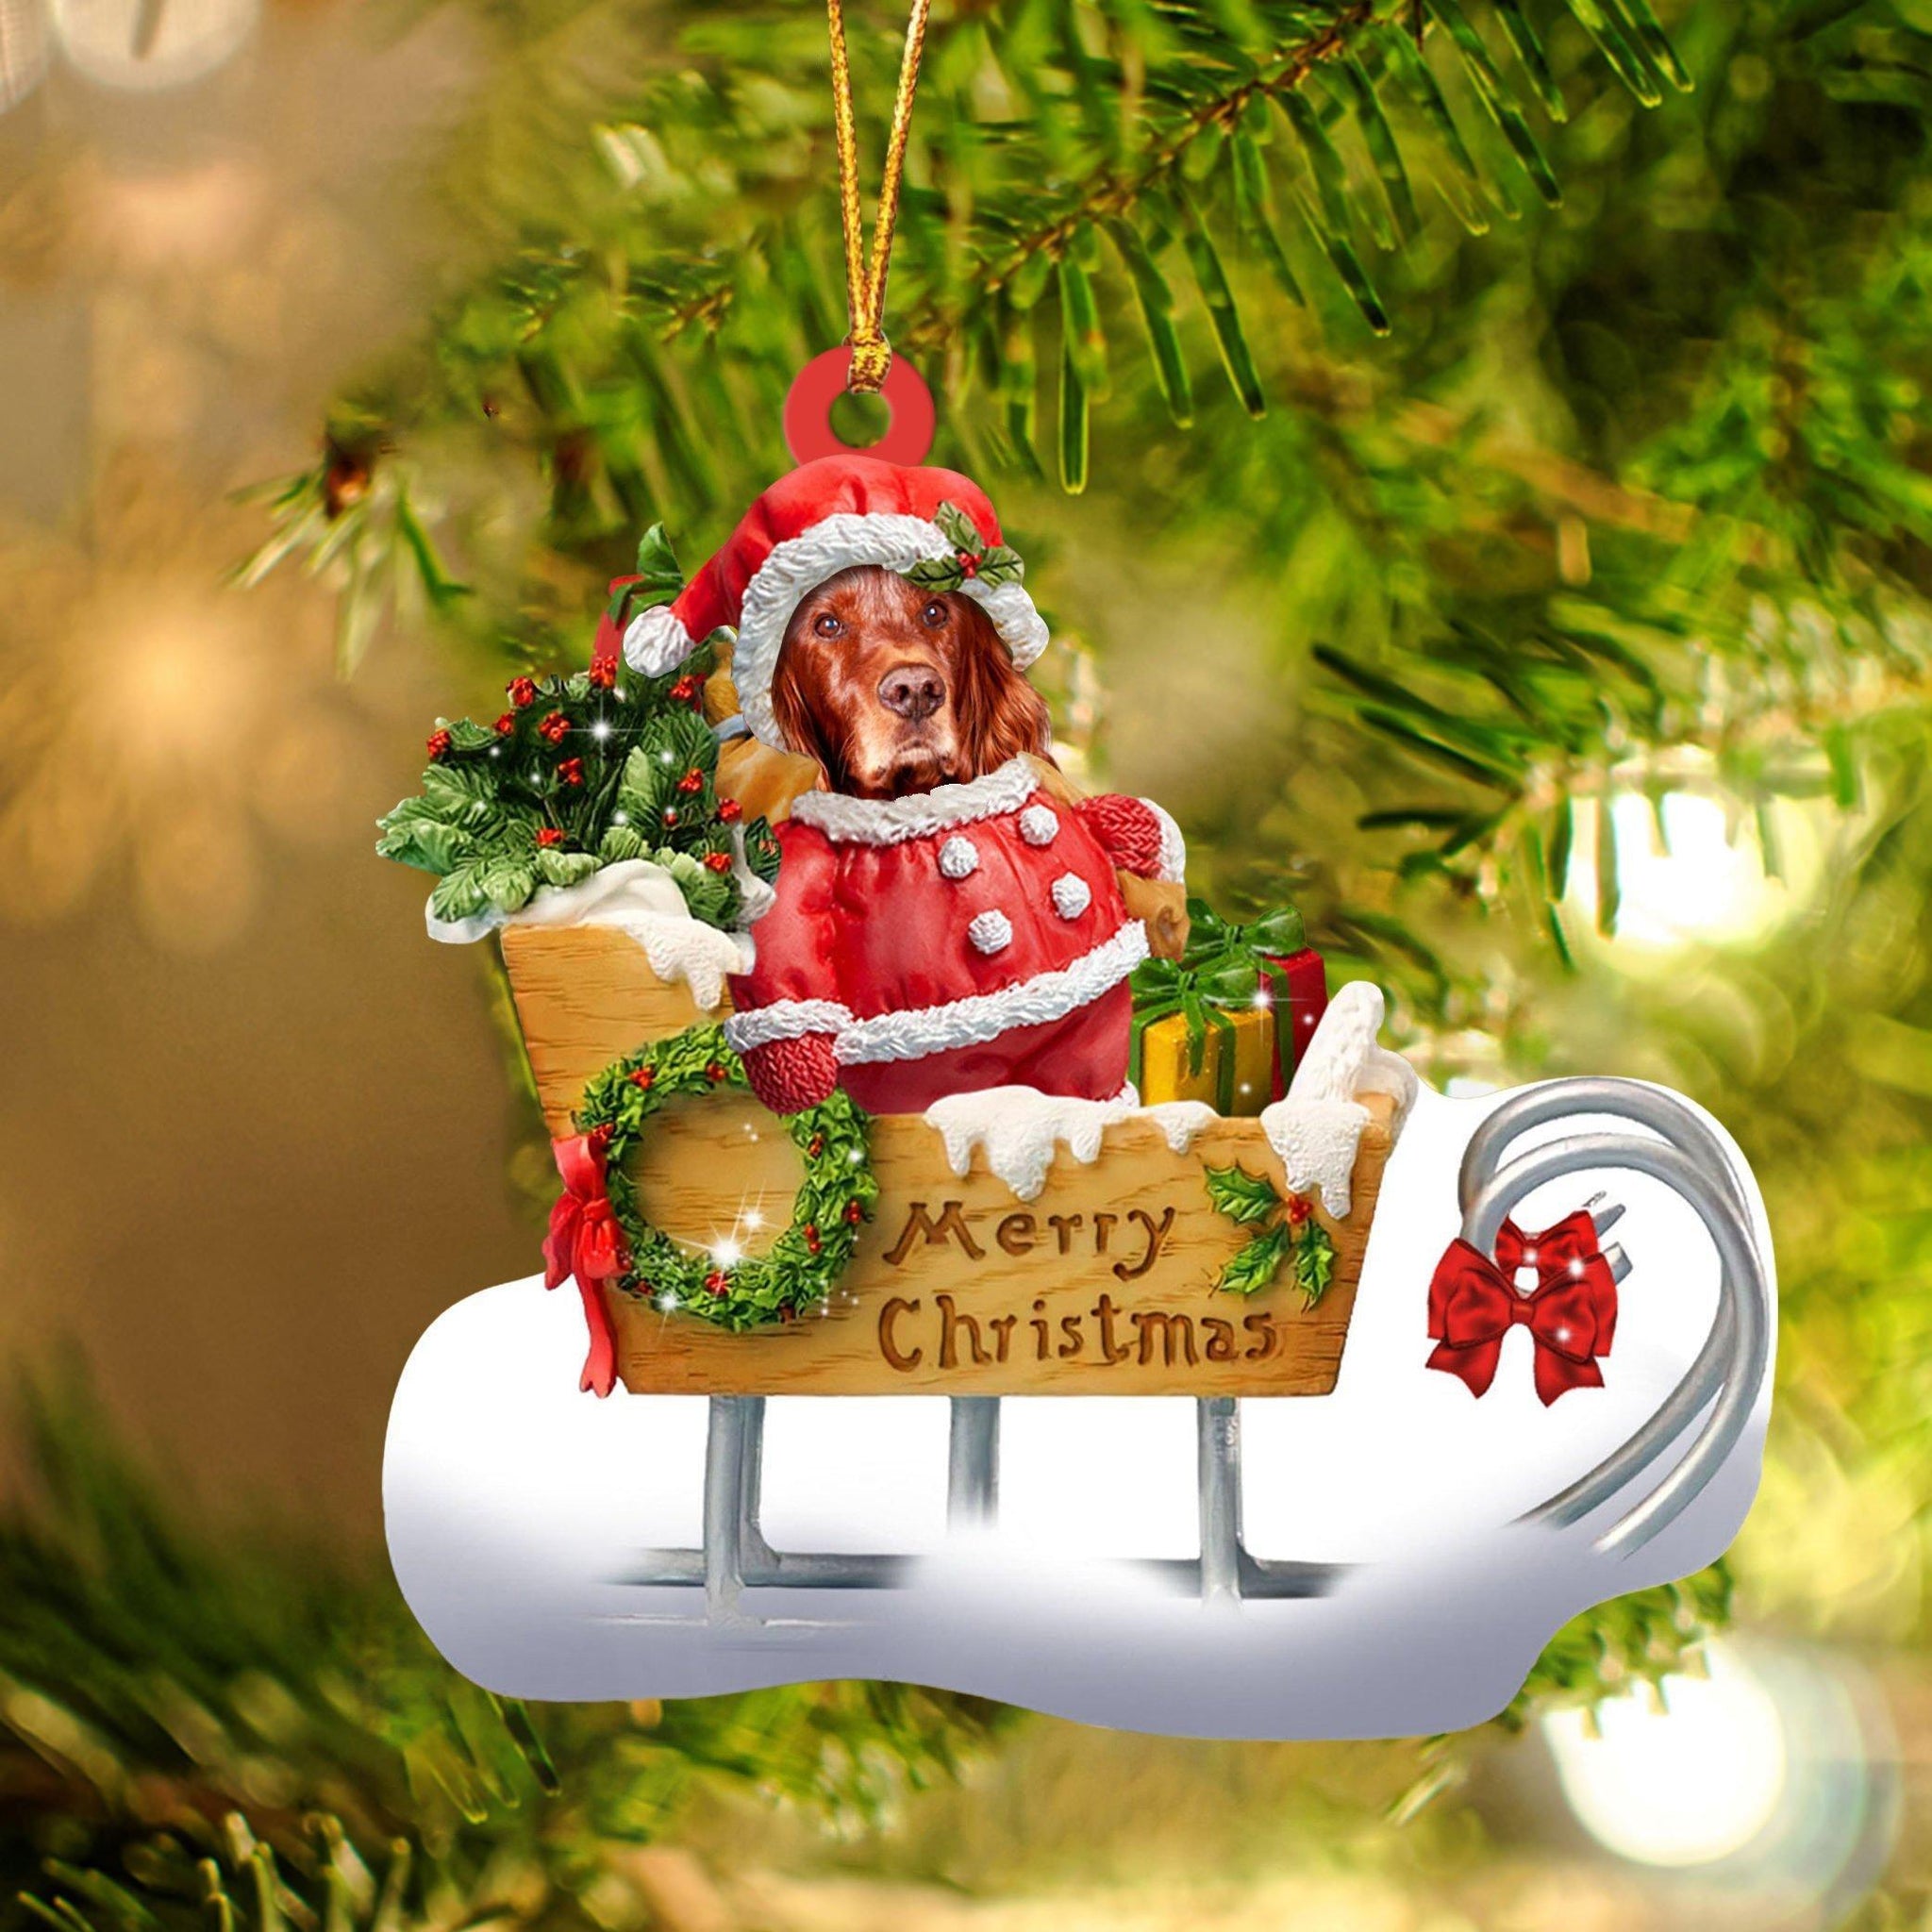 Irish Setter Merry Christmas Ornament, Gift For Dog Lover